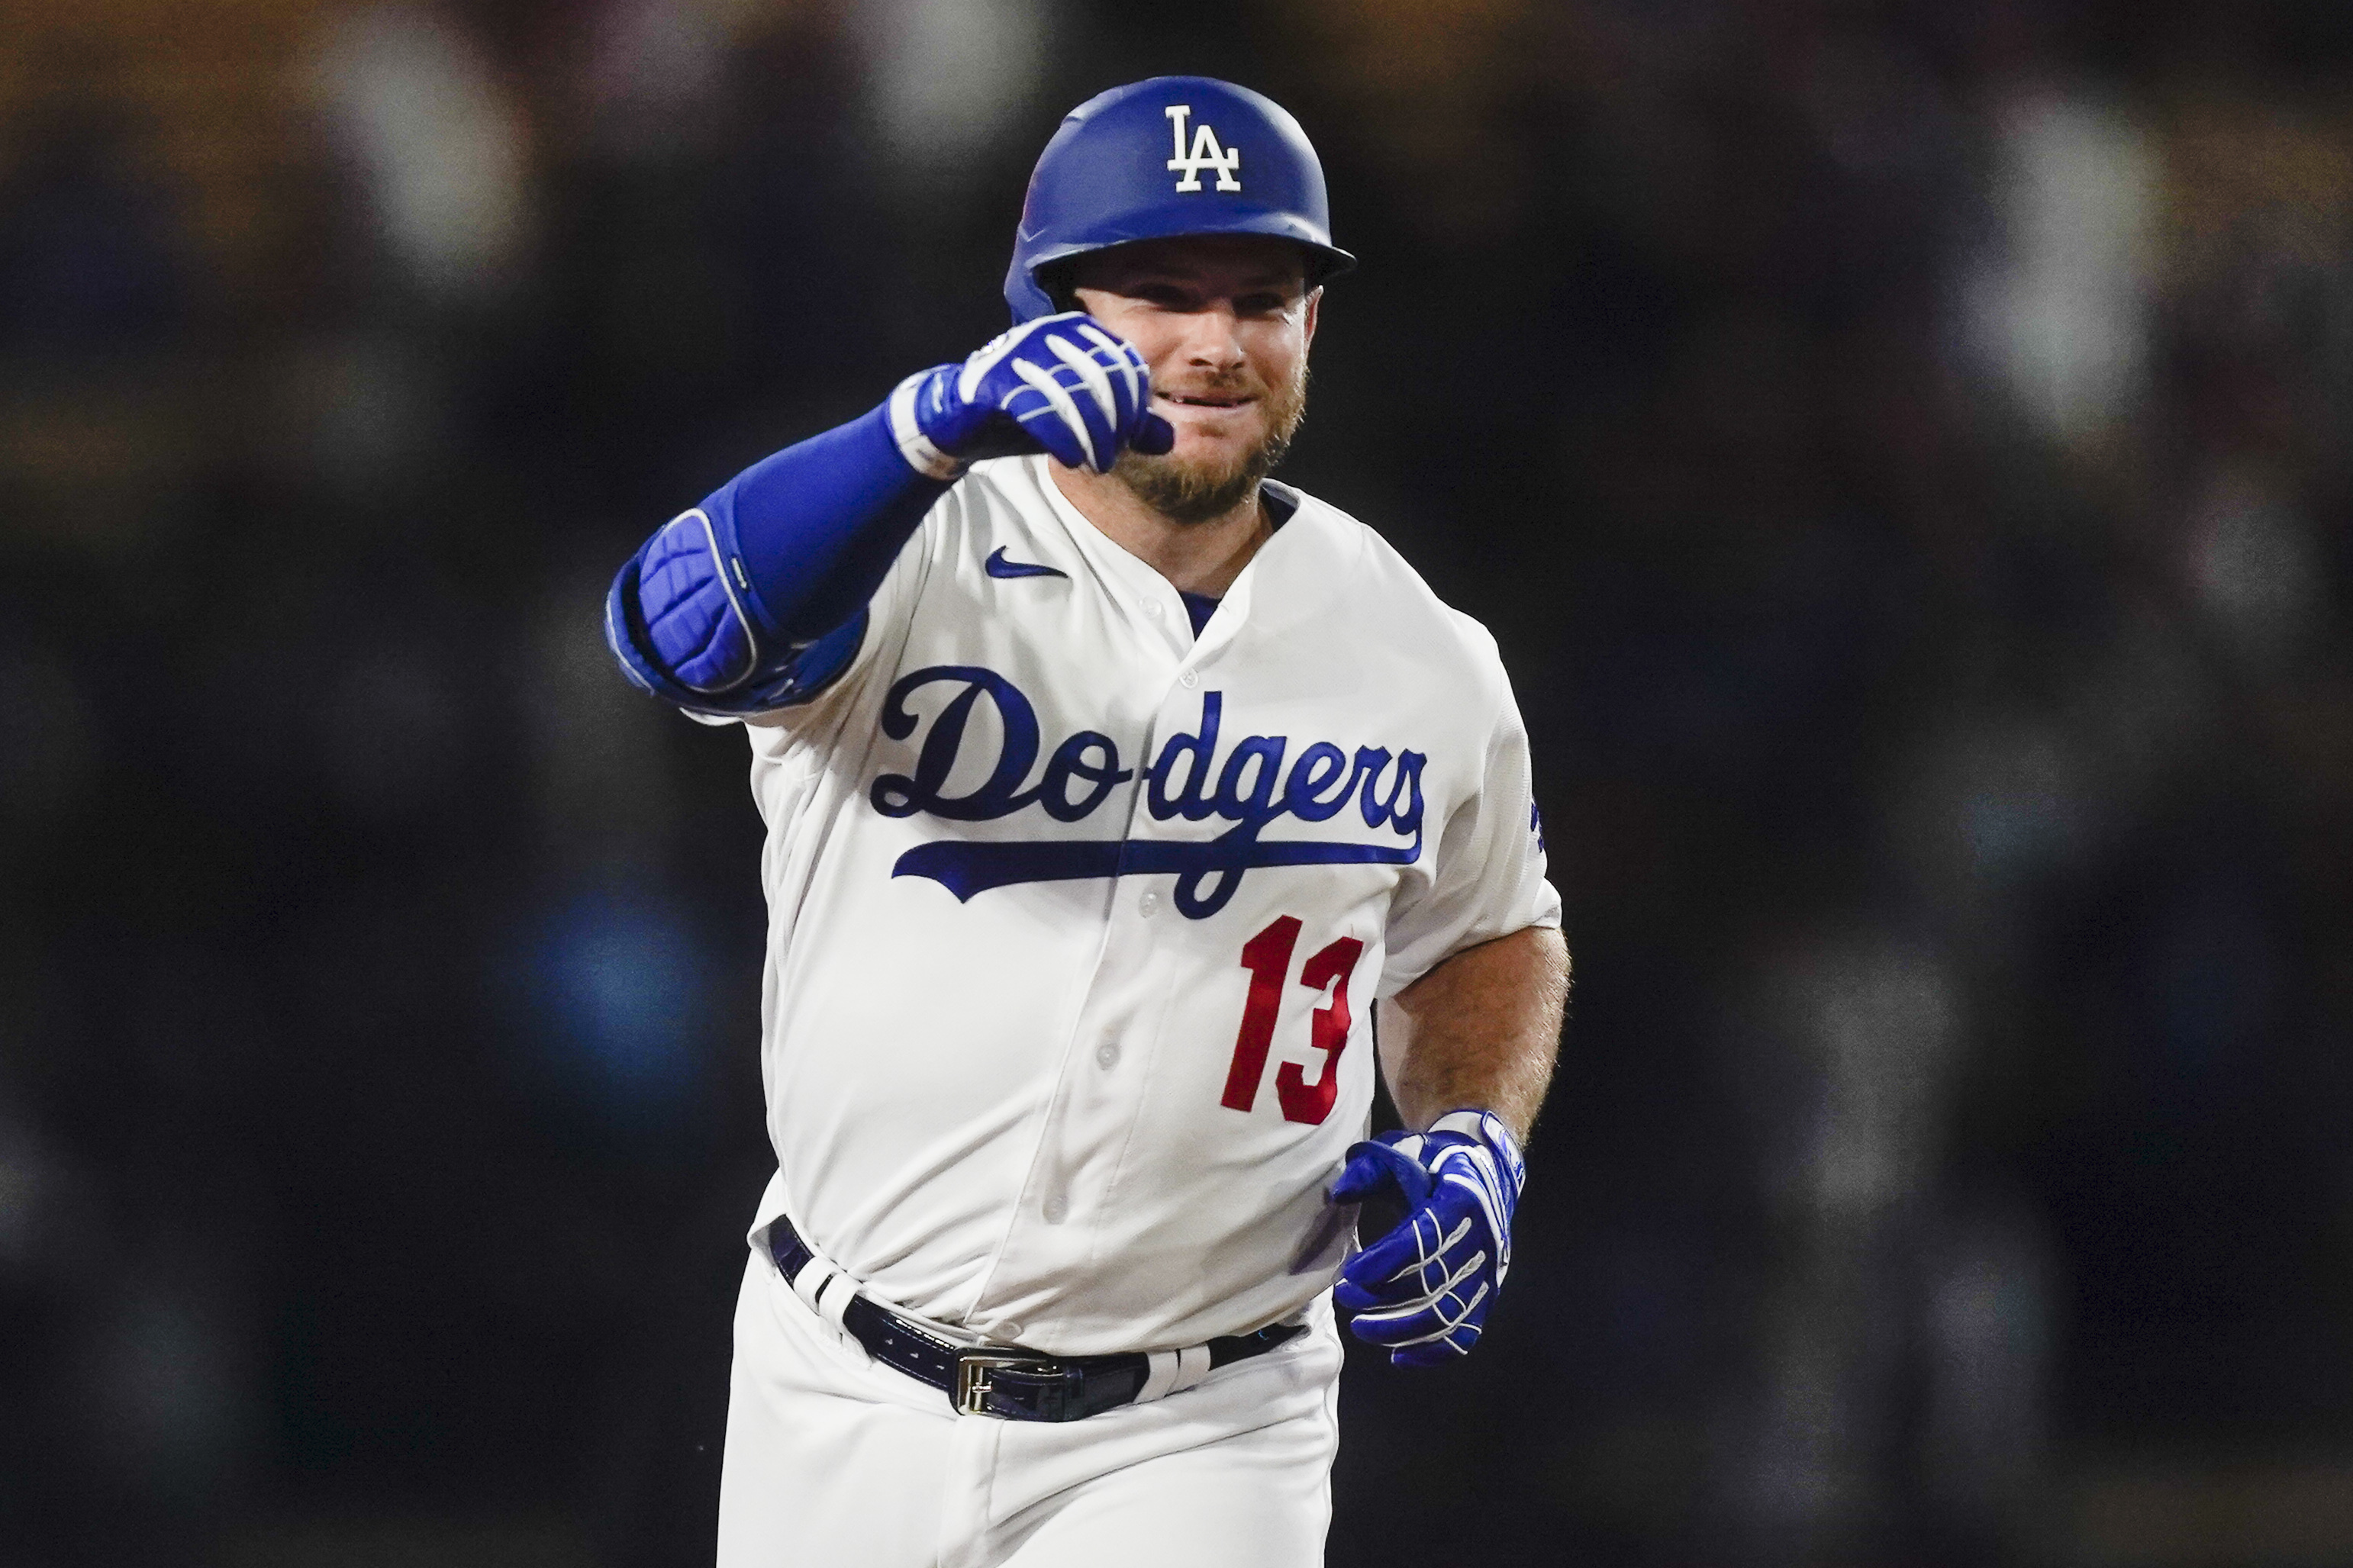 Dodgers win in 12th on bases-loaded walk, Muncy homers twice to regain  major-league lead